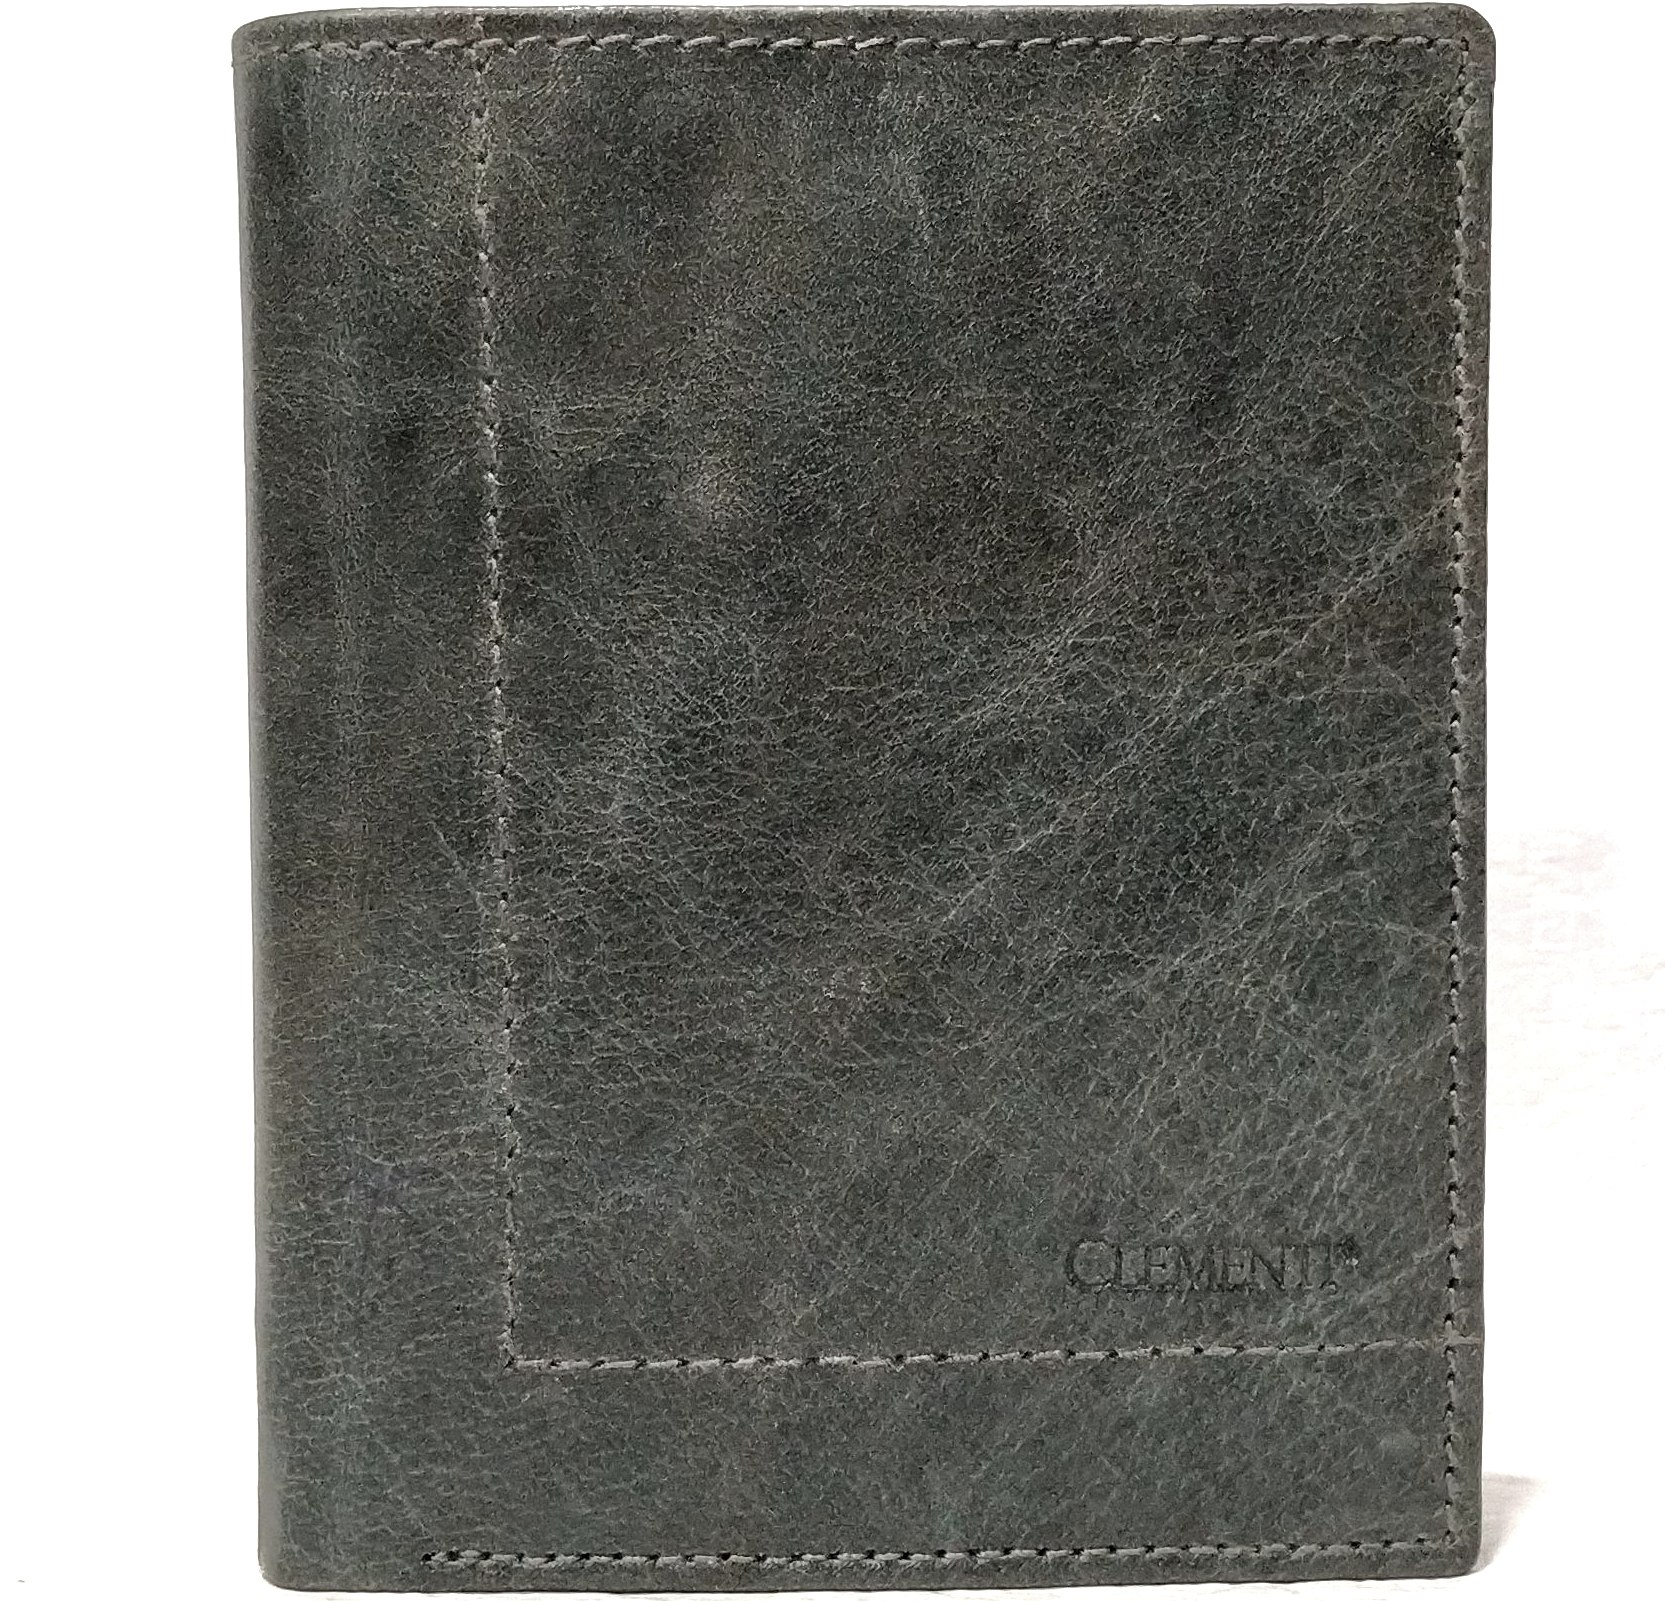 Pánská peněženka na výšku kožená Clementi GRV šedá